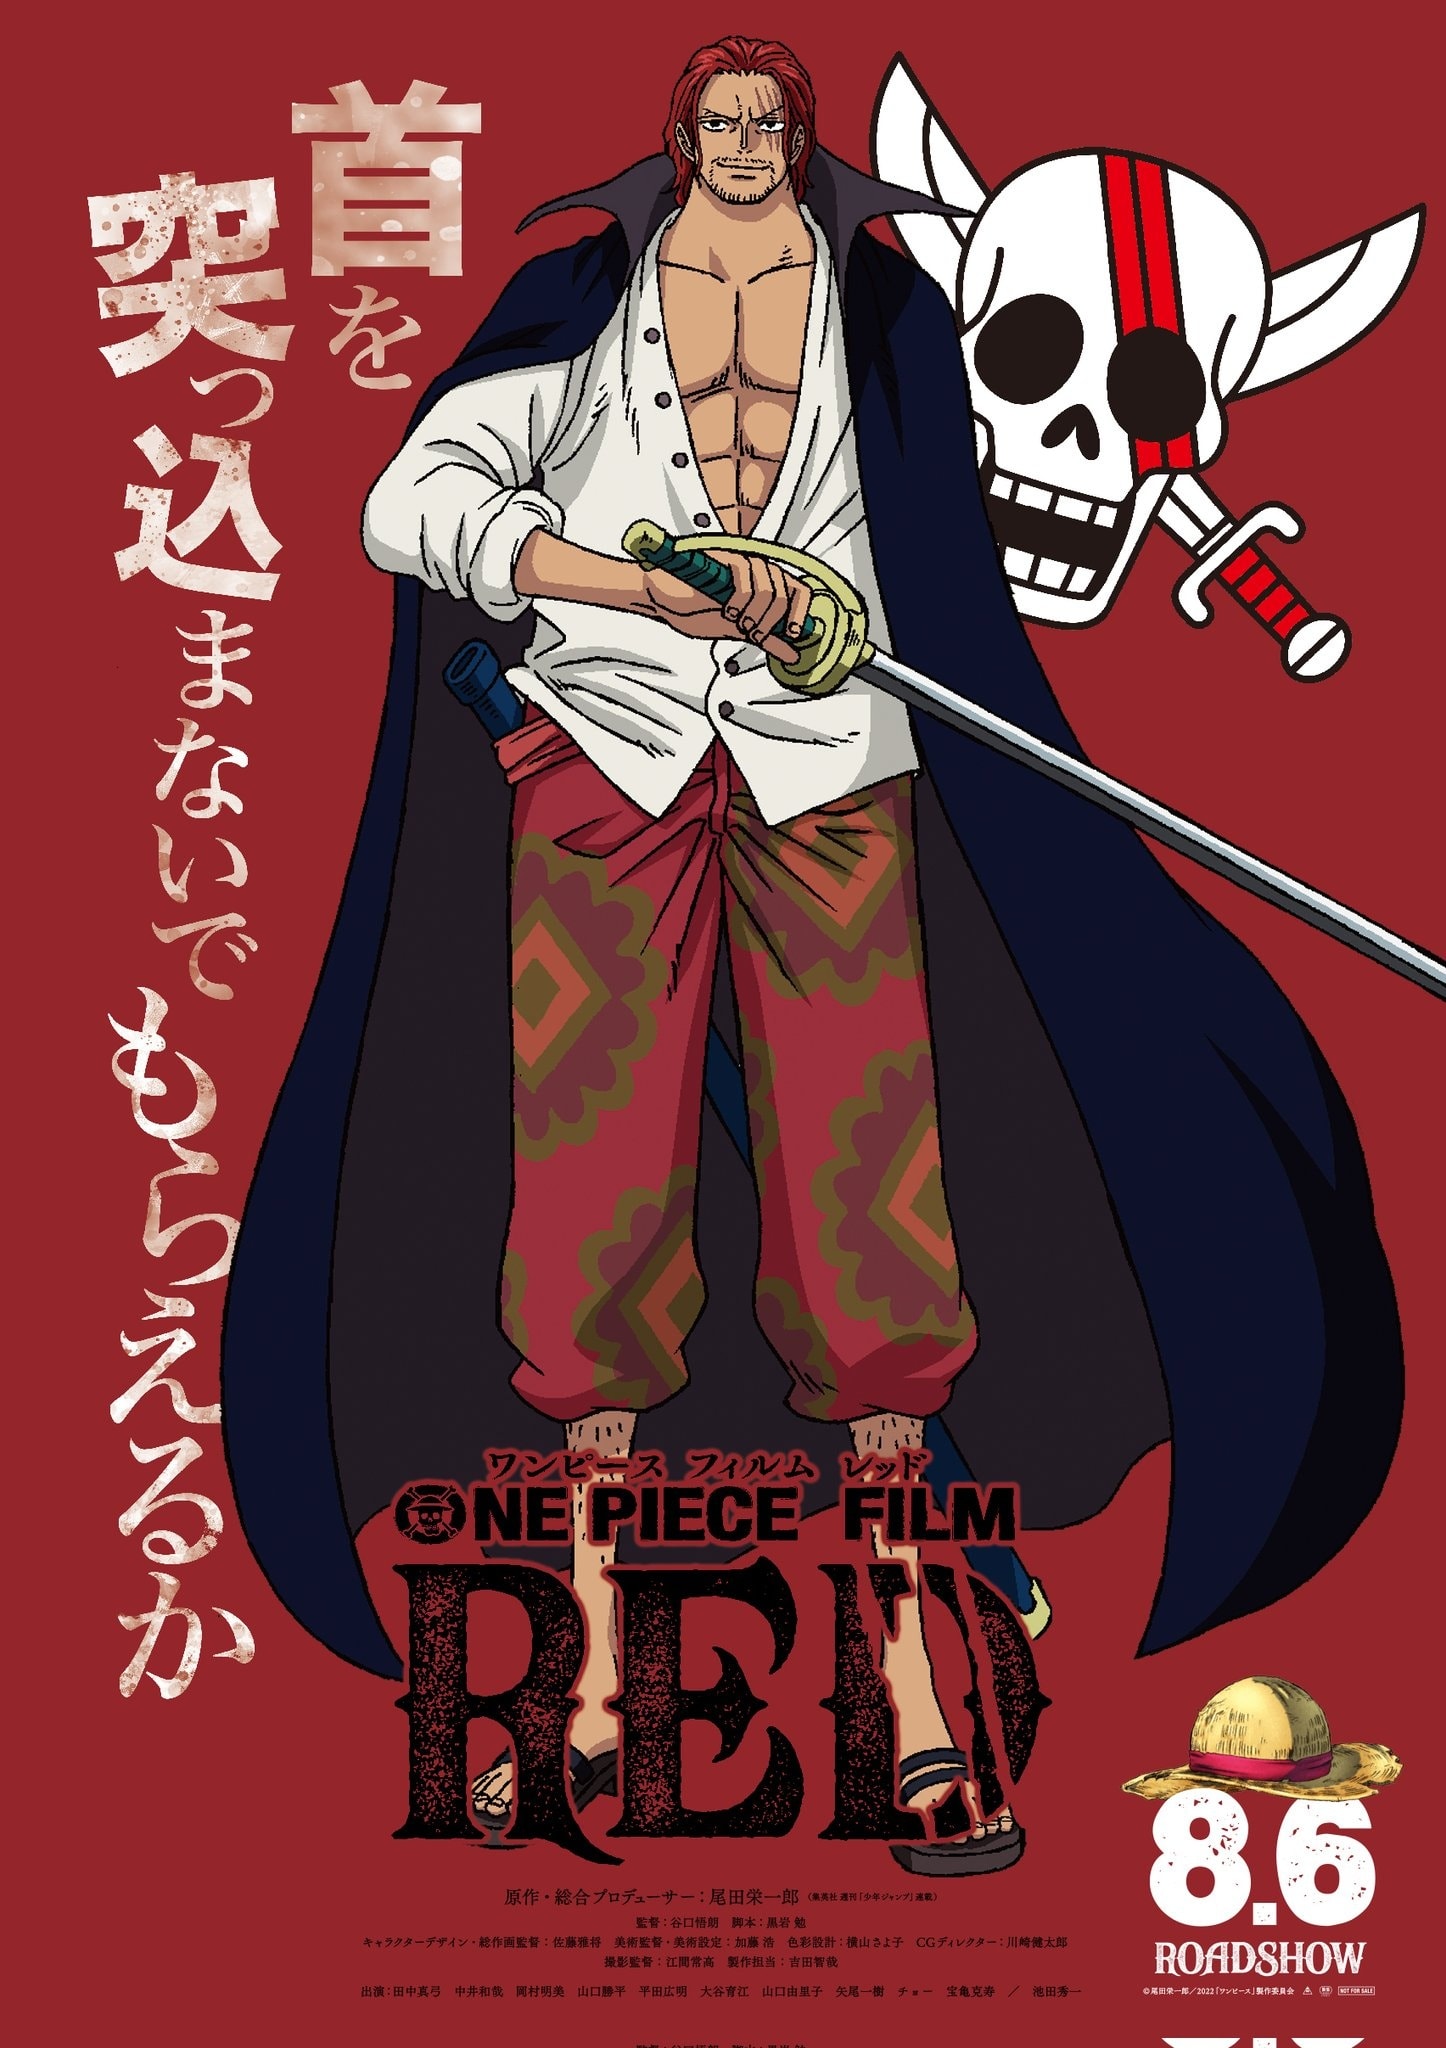 One Piece Film Red: Nếu bạn là một fan của bộ truyện nổi tiếng One Piece, không thể bỏ qua One Piece Film Red - một phần của loạt phim hoạt hình đình đám về cuộc phiêu lưu của Luffy và các bạn. Hãy cùng xem bộ phim này và khám phá thế giới mới đầy kỳ diệu.